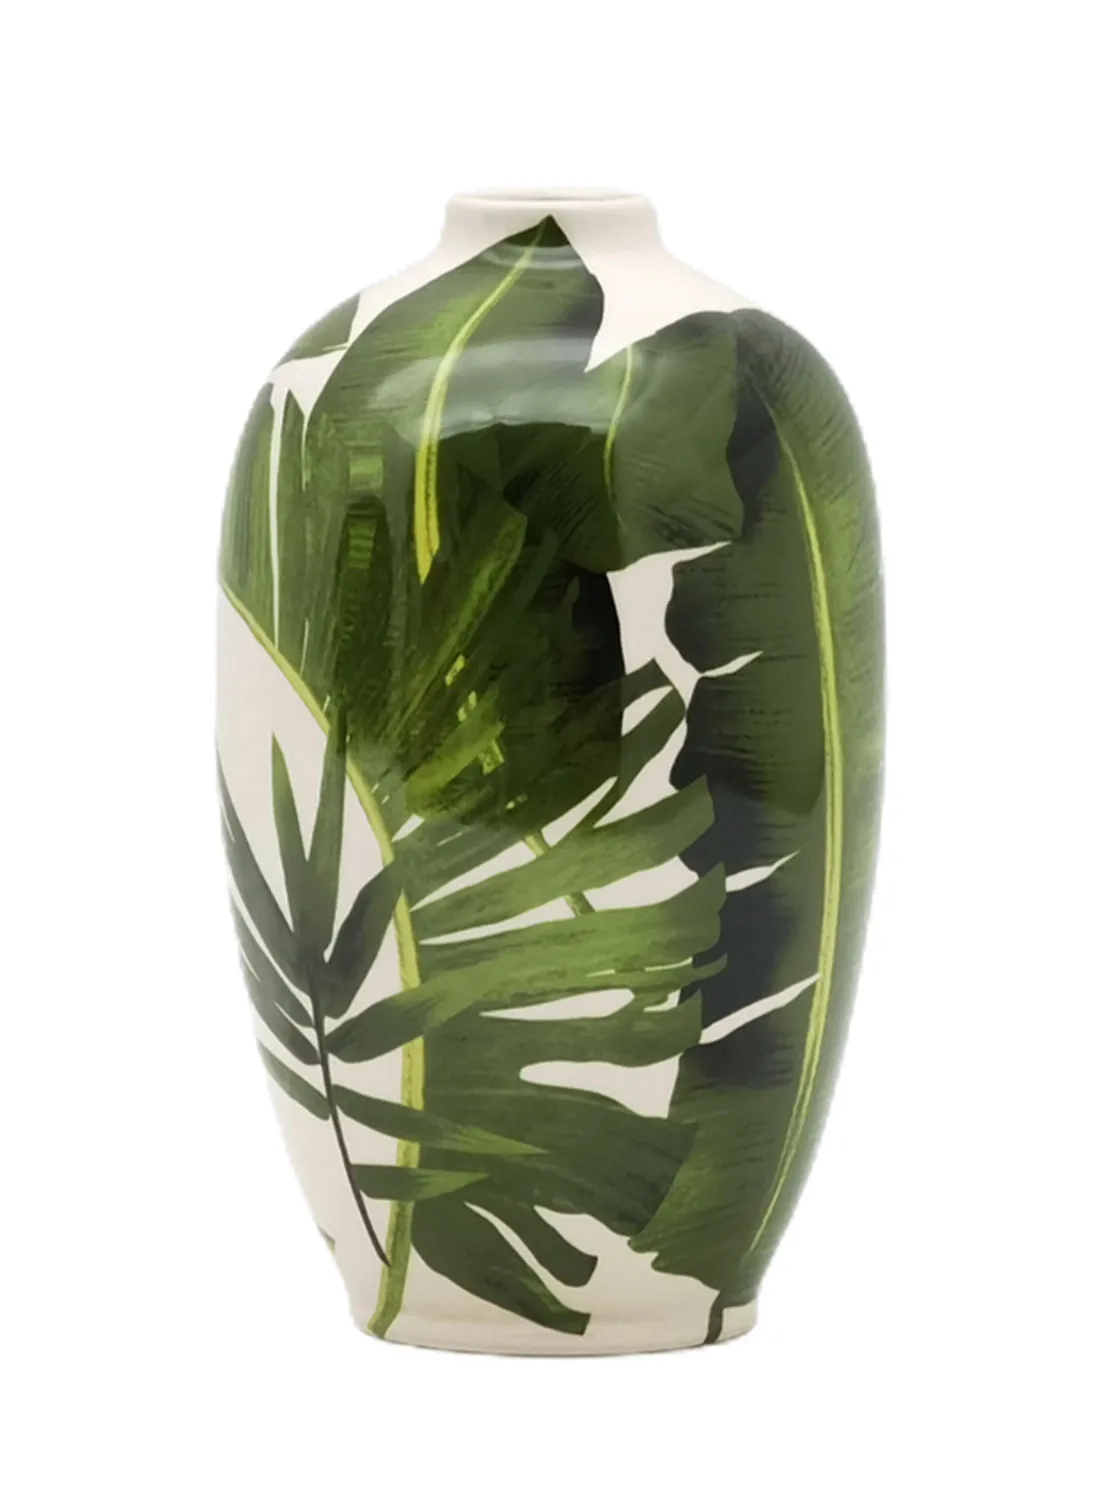 مزهرية خزفية بتصميم أنيق من ebb & flow مادة فاخرة فريدة من نوعها ذات جودة عالية للمنزل الأنيق المثالي N13-017 أخضر 15.5 × 29.5 سم